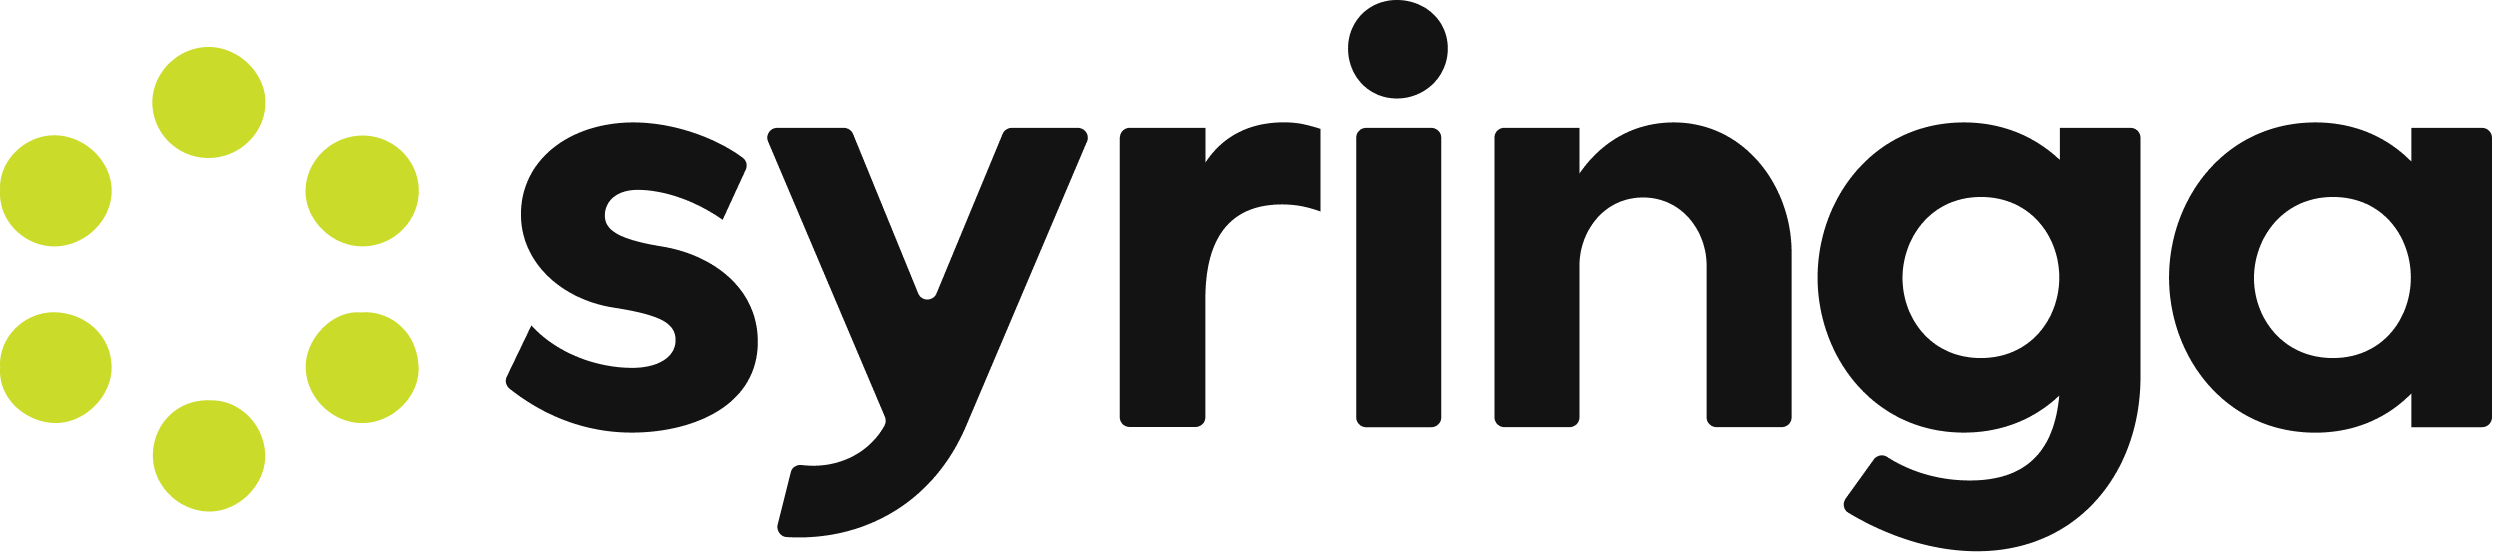 Syringa Networks